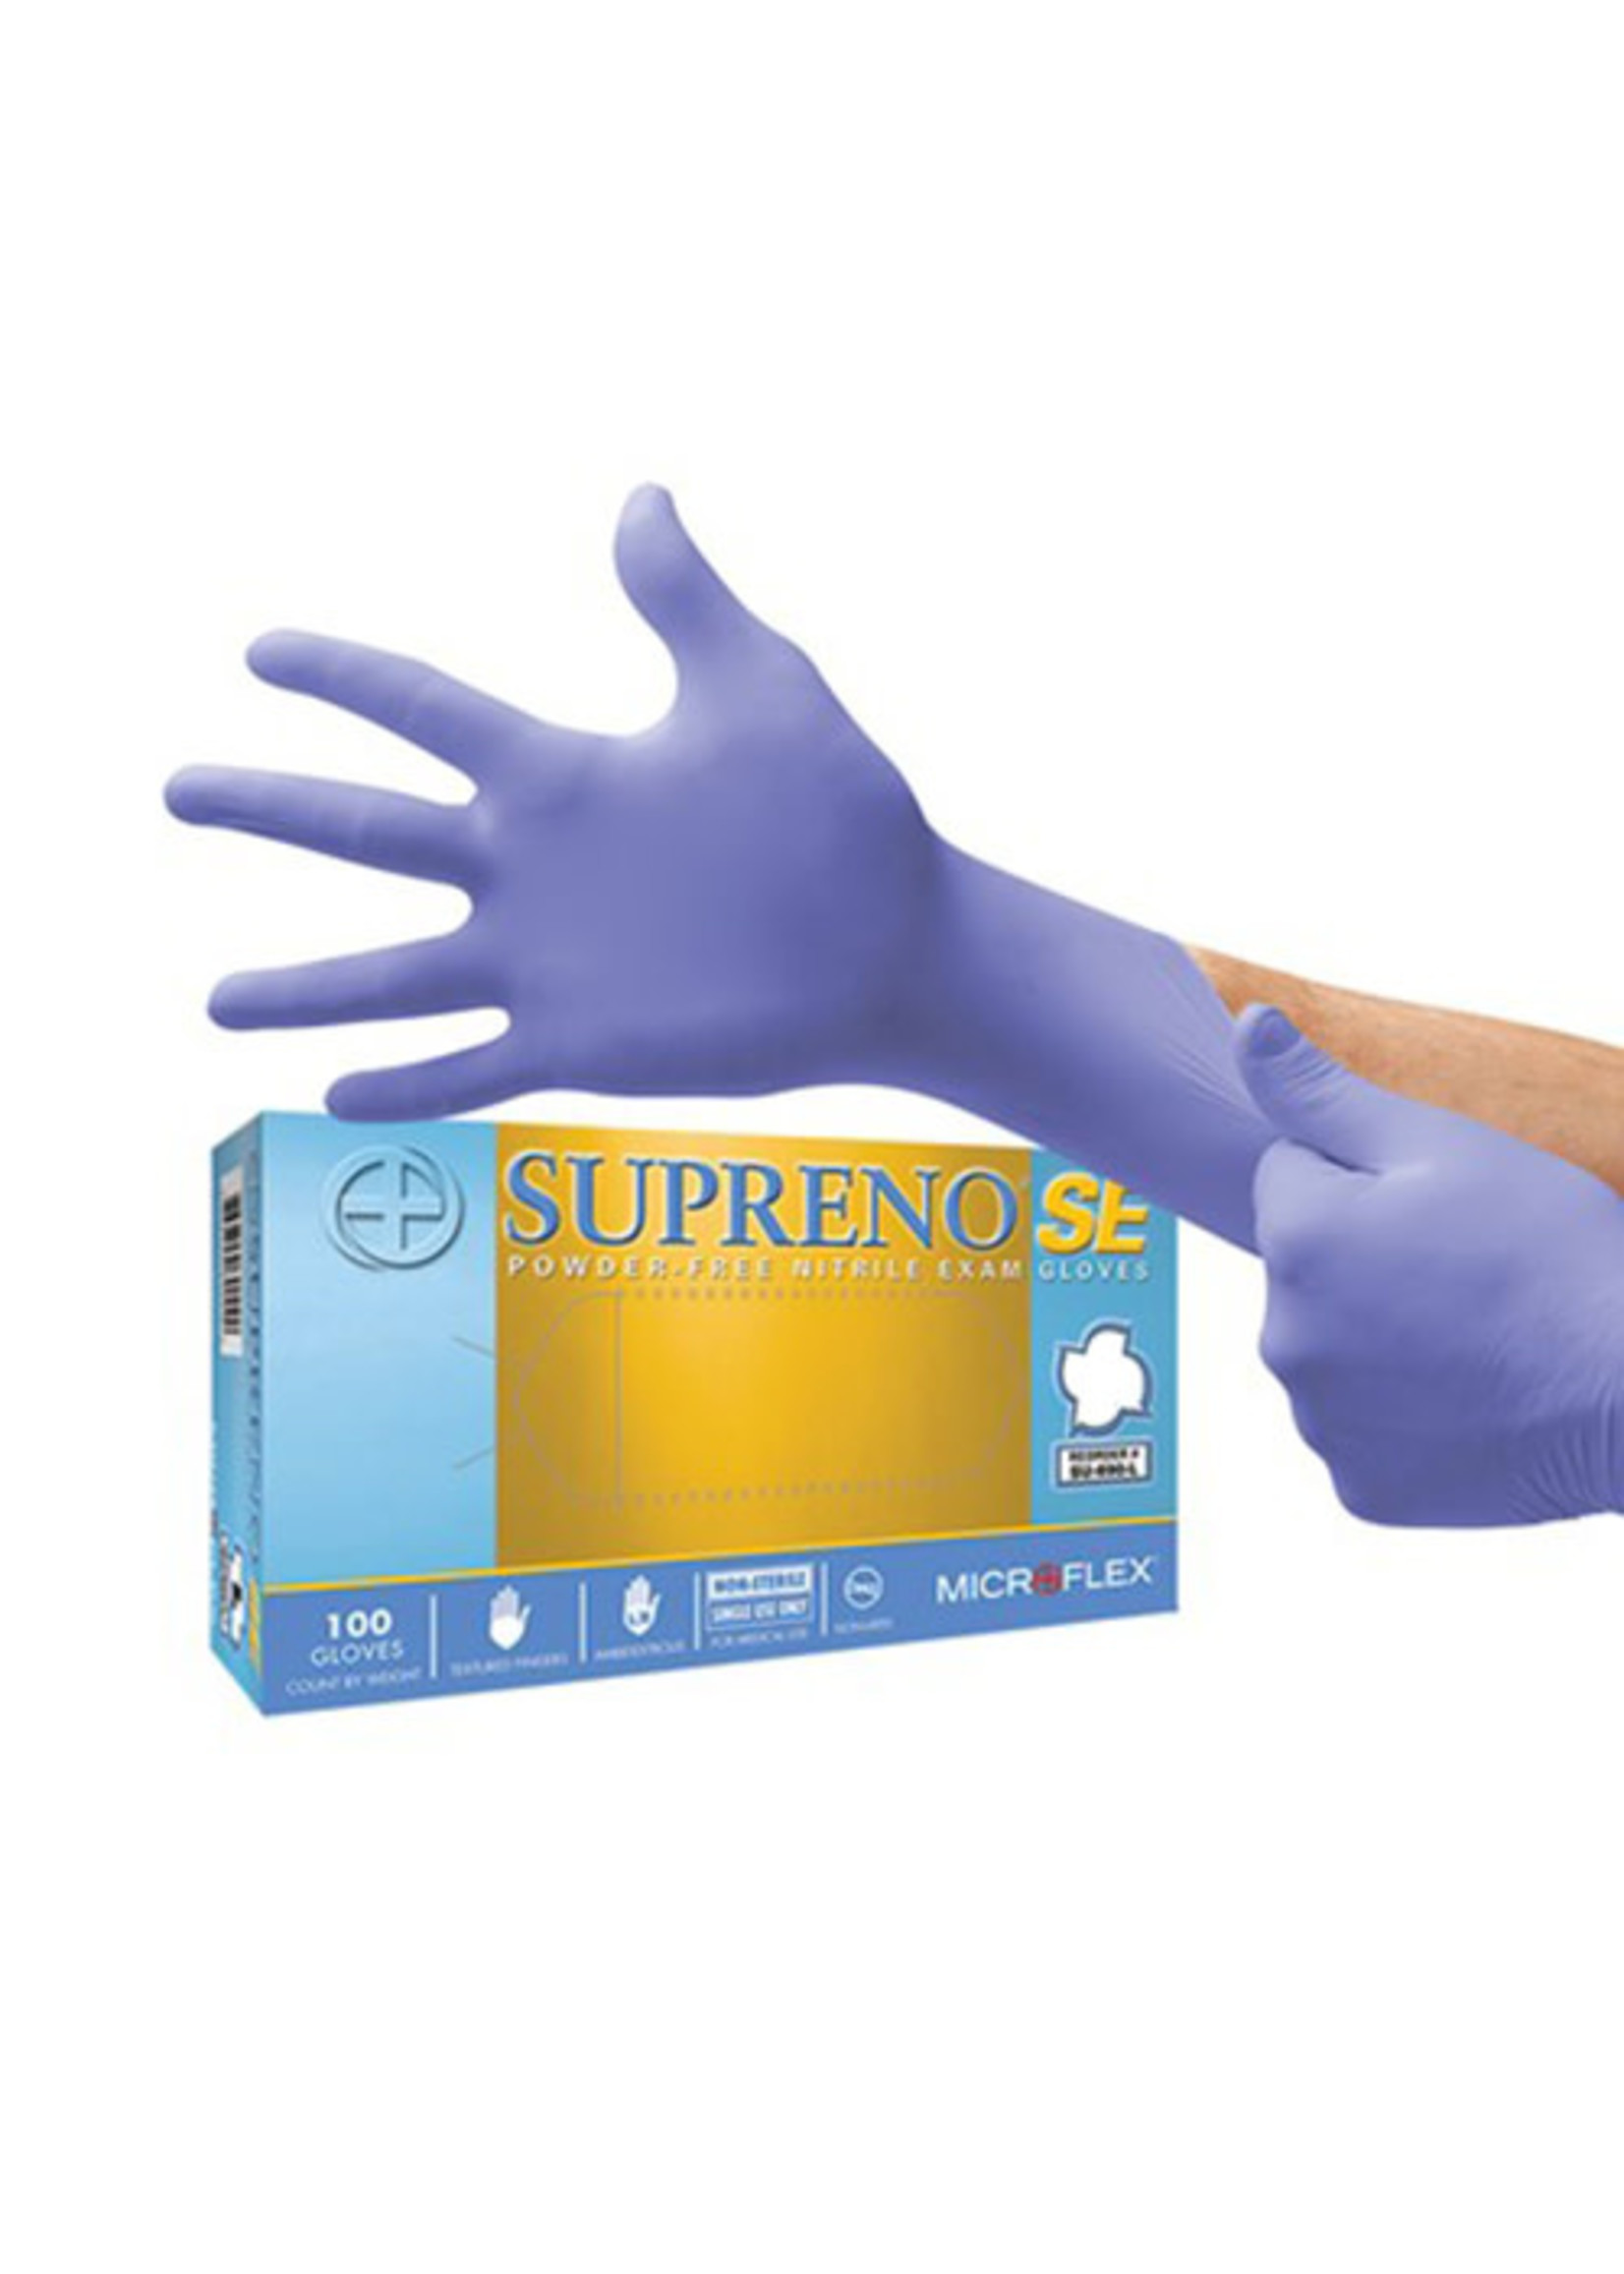 Exam Gloves L - Supreno SE Purple (Case/10)